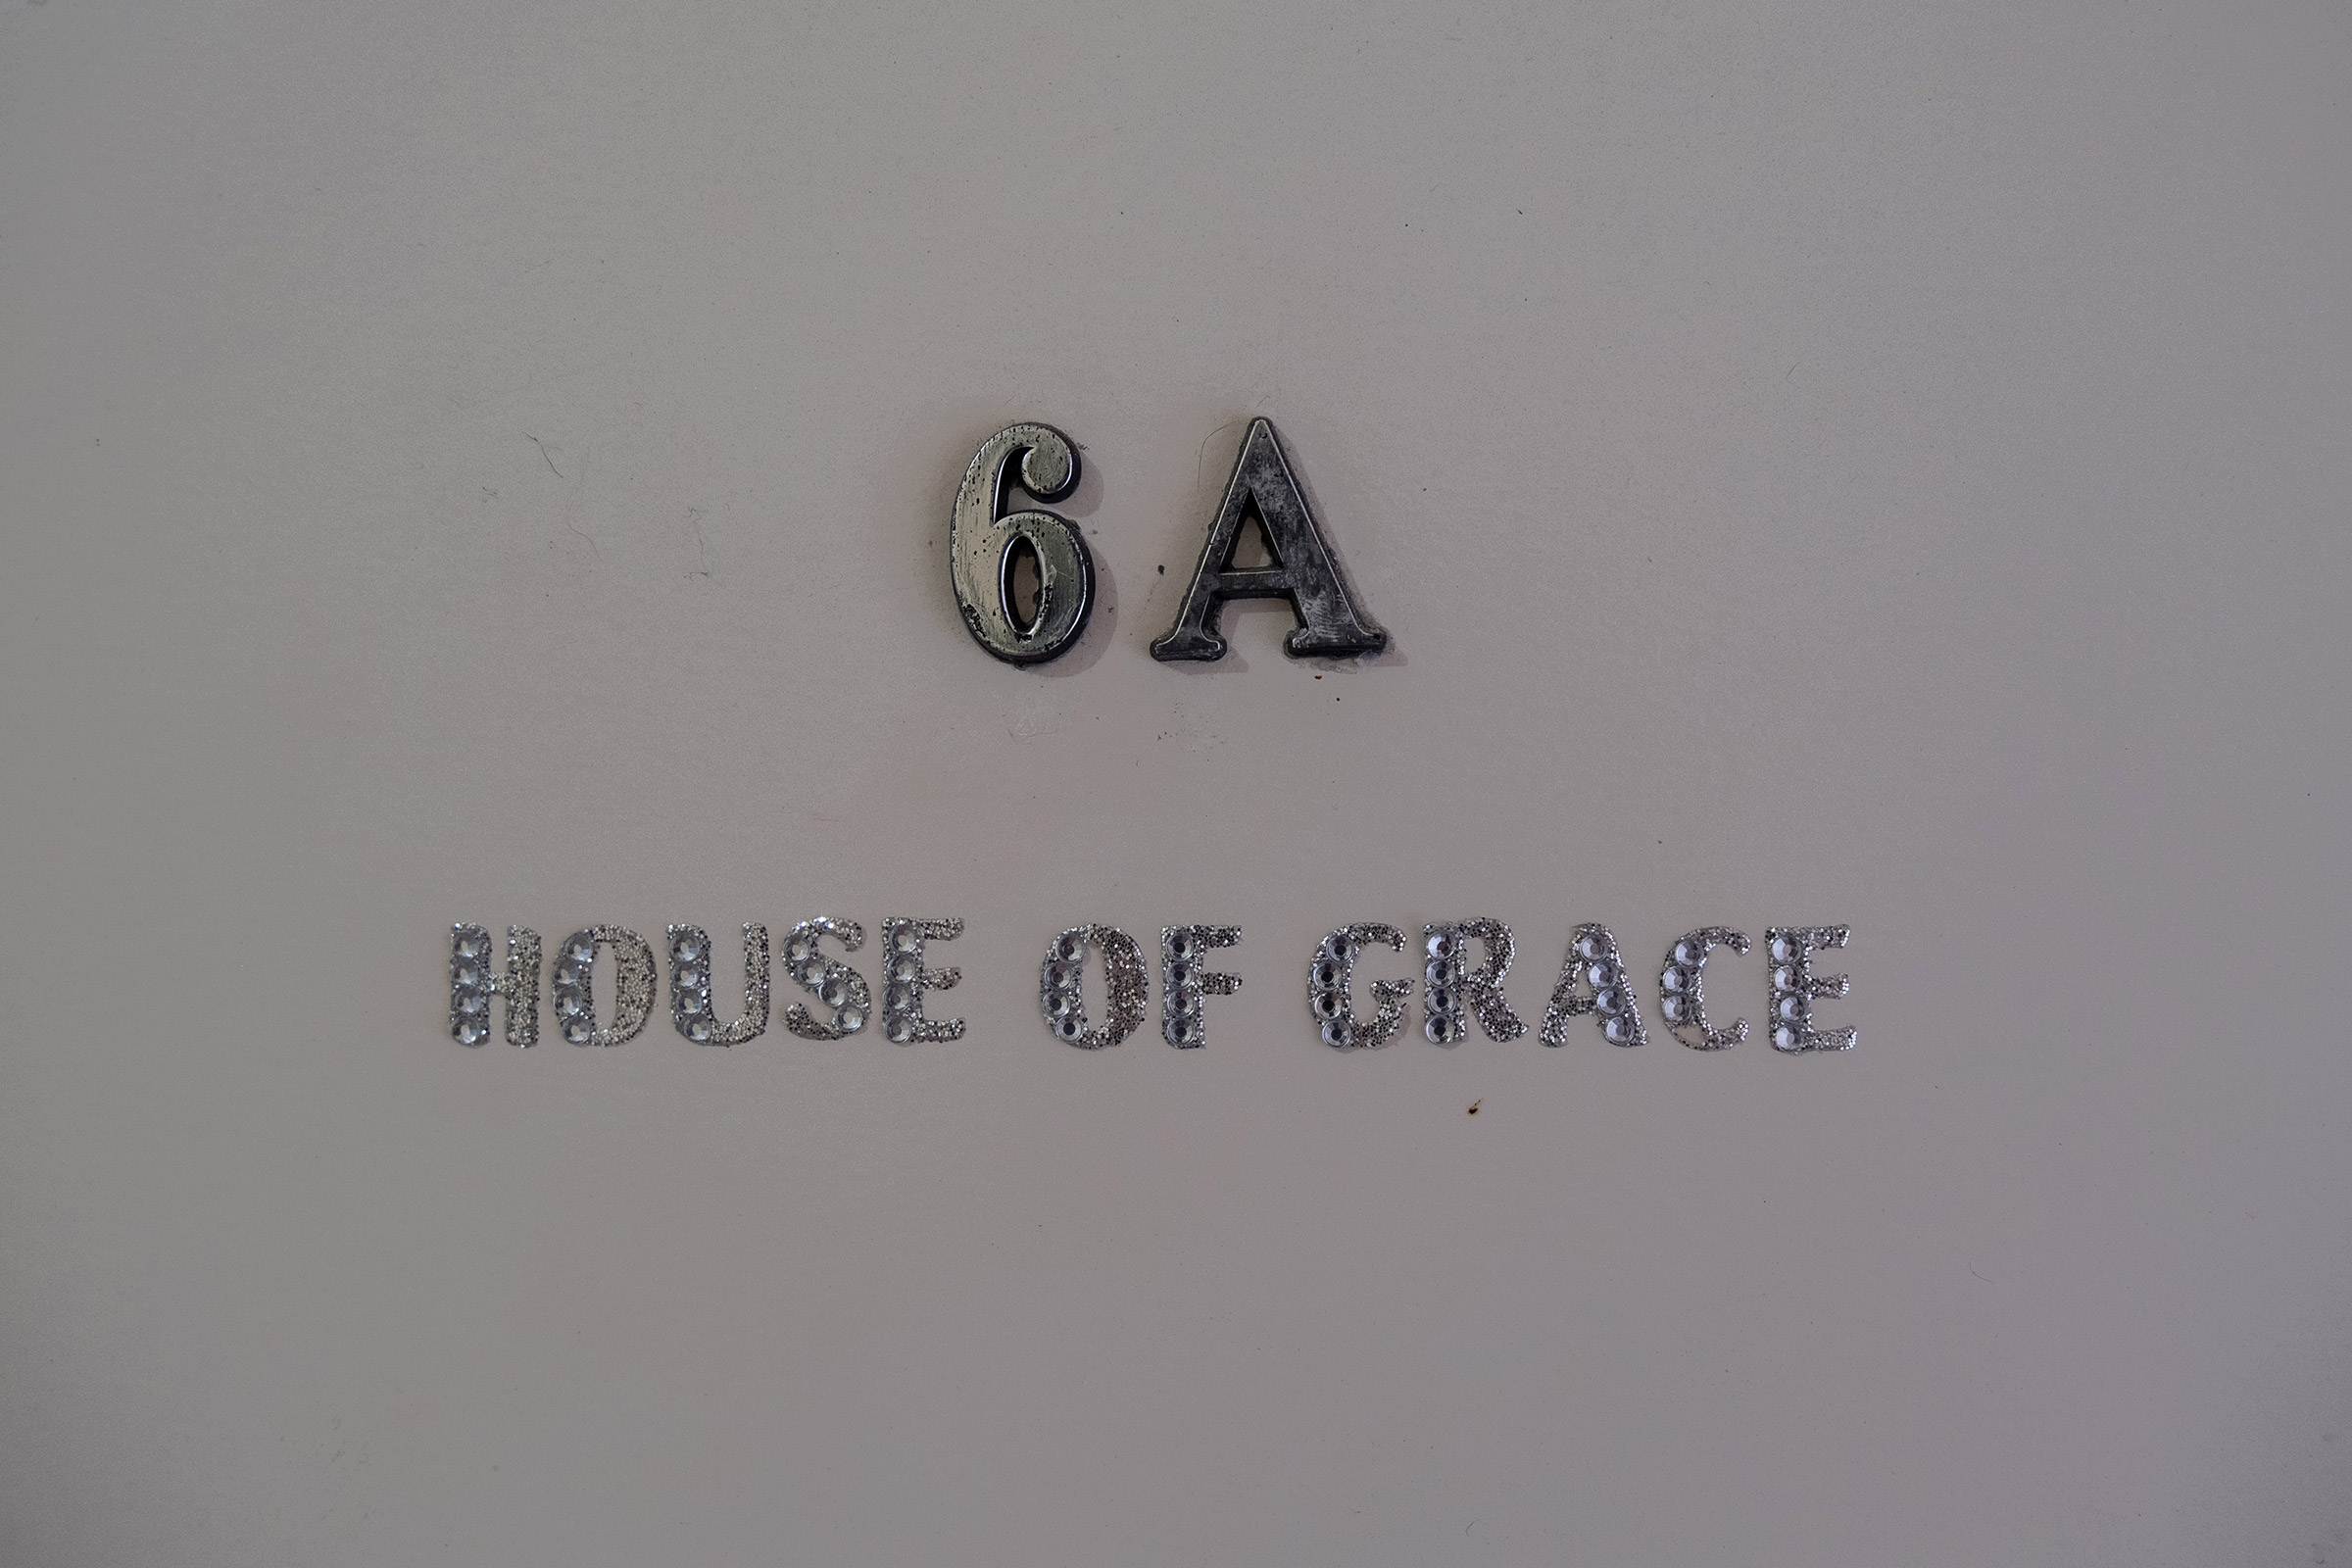 María José’s apartment door reads “House of Grace” in Rio Piedras, San Juan, Puerto Rico. (Gabriella N. Báez—Magnum Foundation)